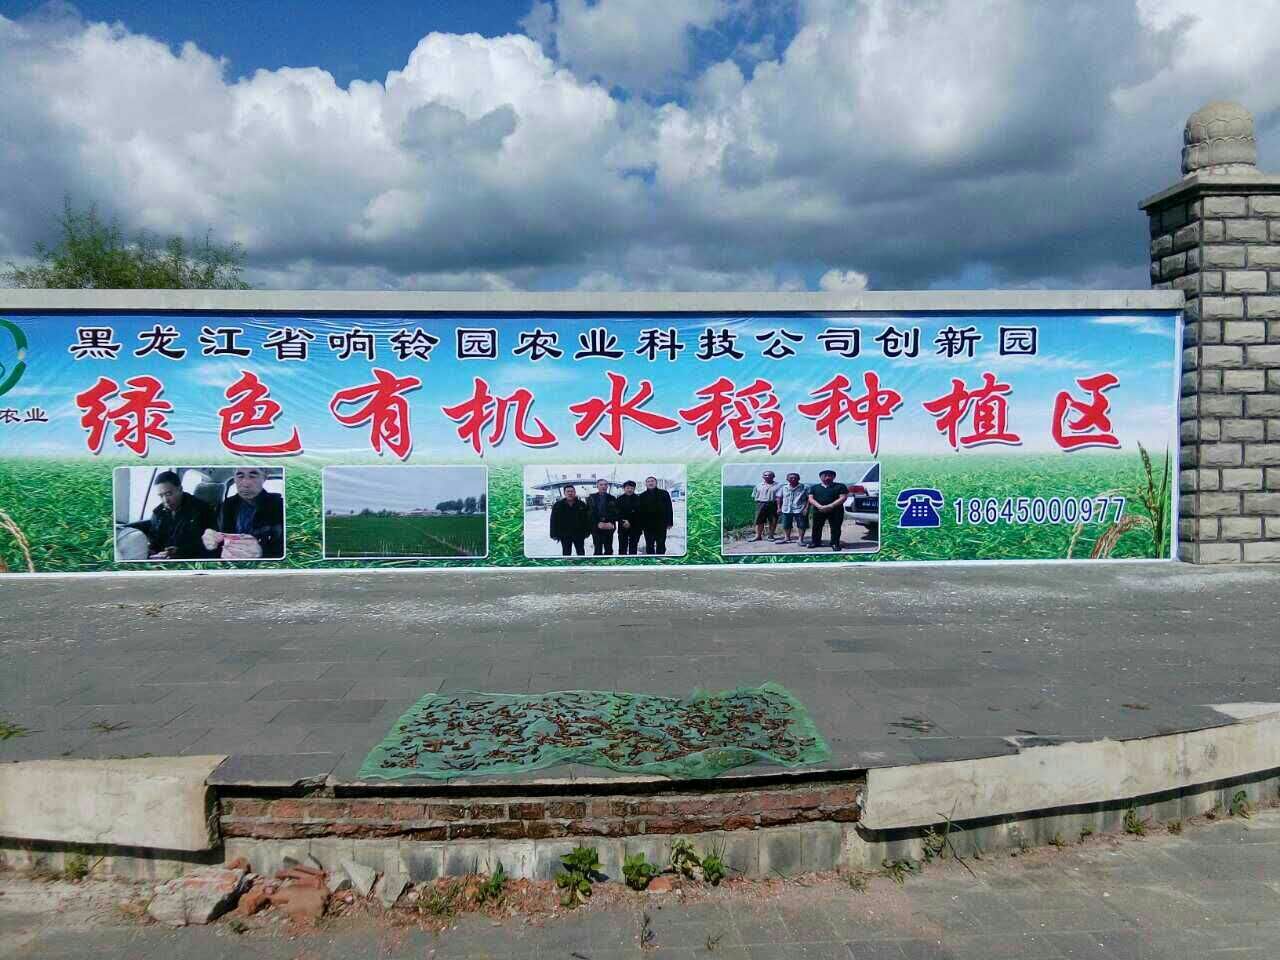 黑龙江省响铃园农业科技有限公司